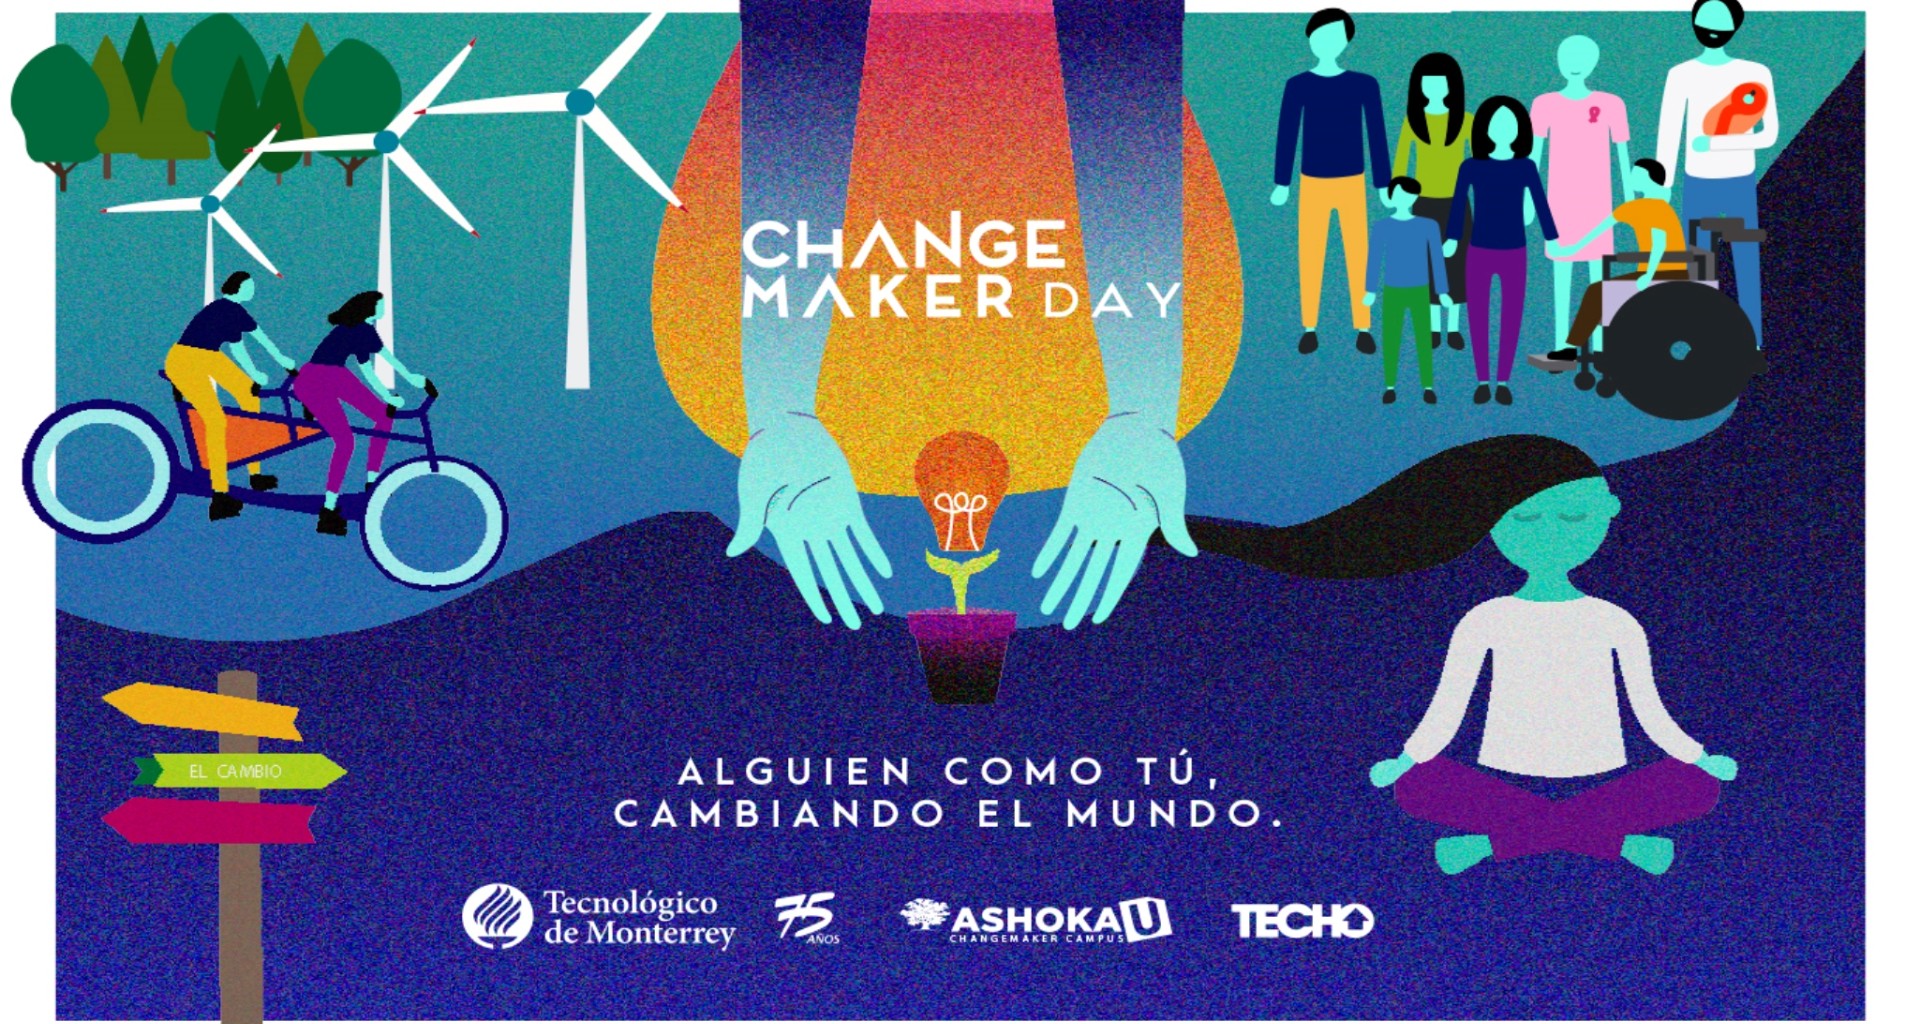 Changemaker day